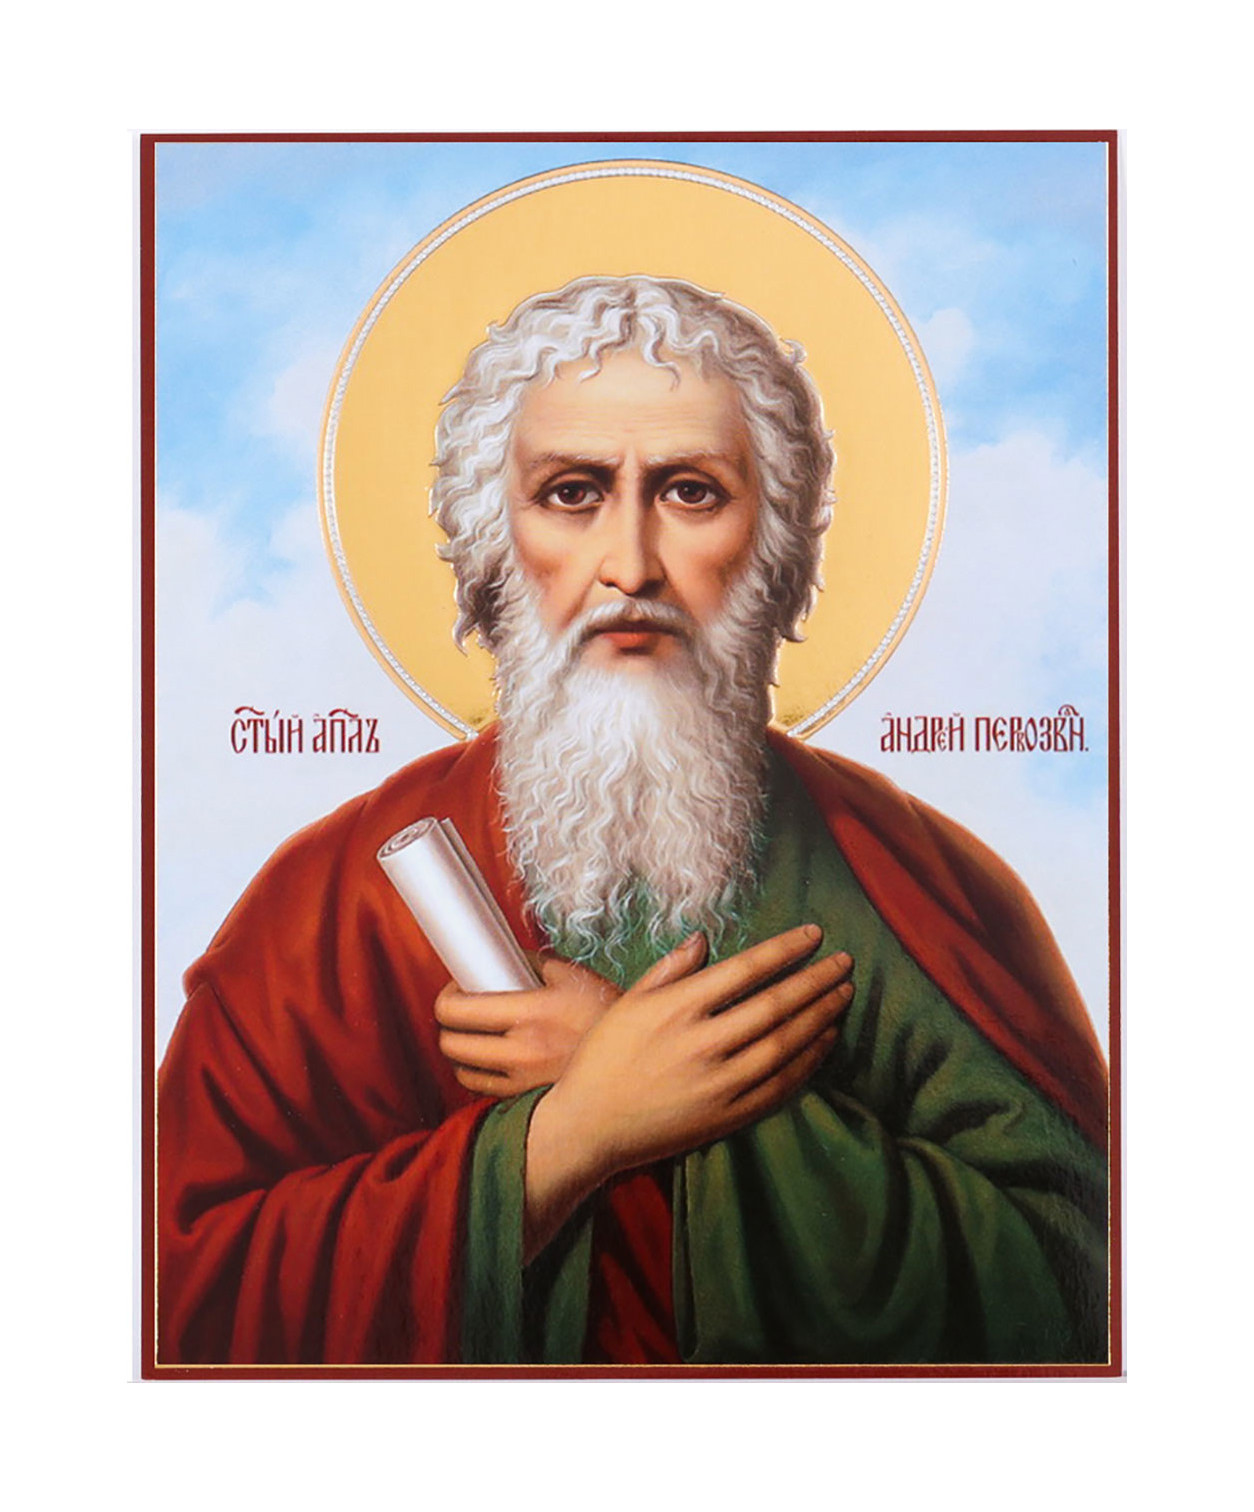 St. Andrew, the Apostle